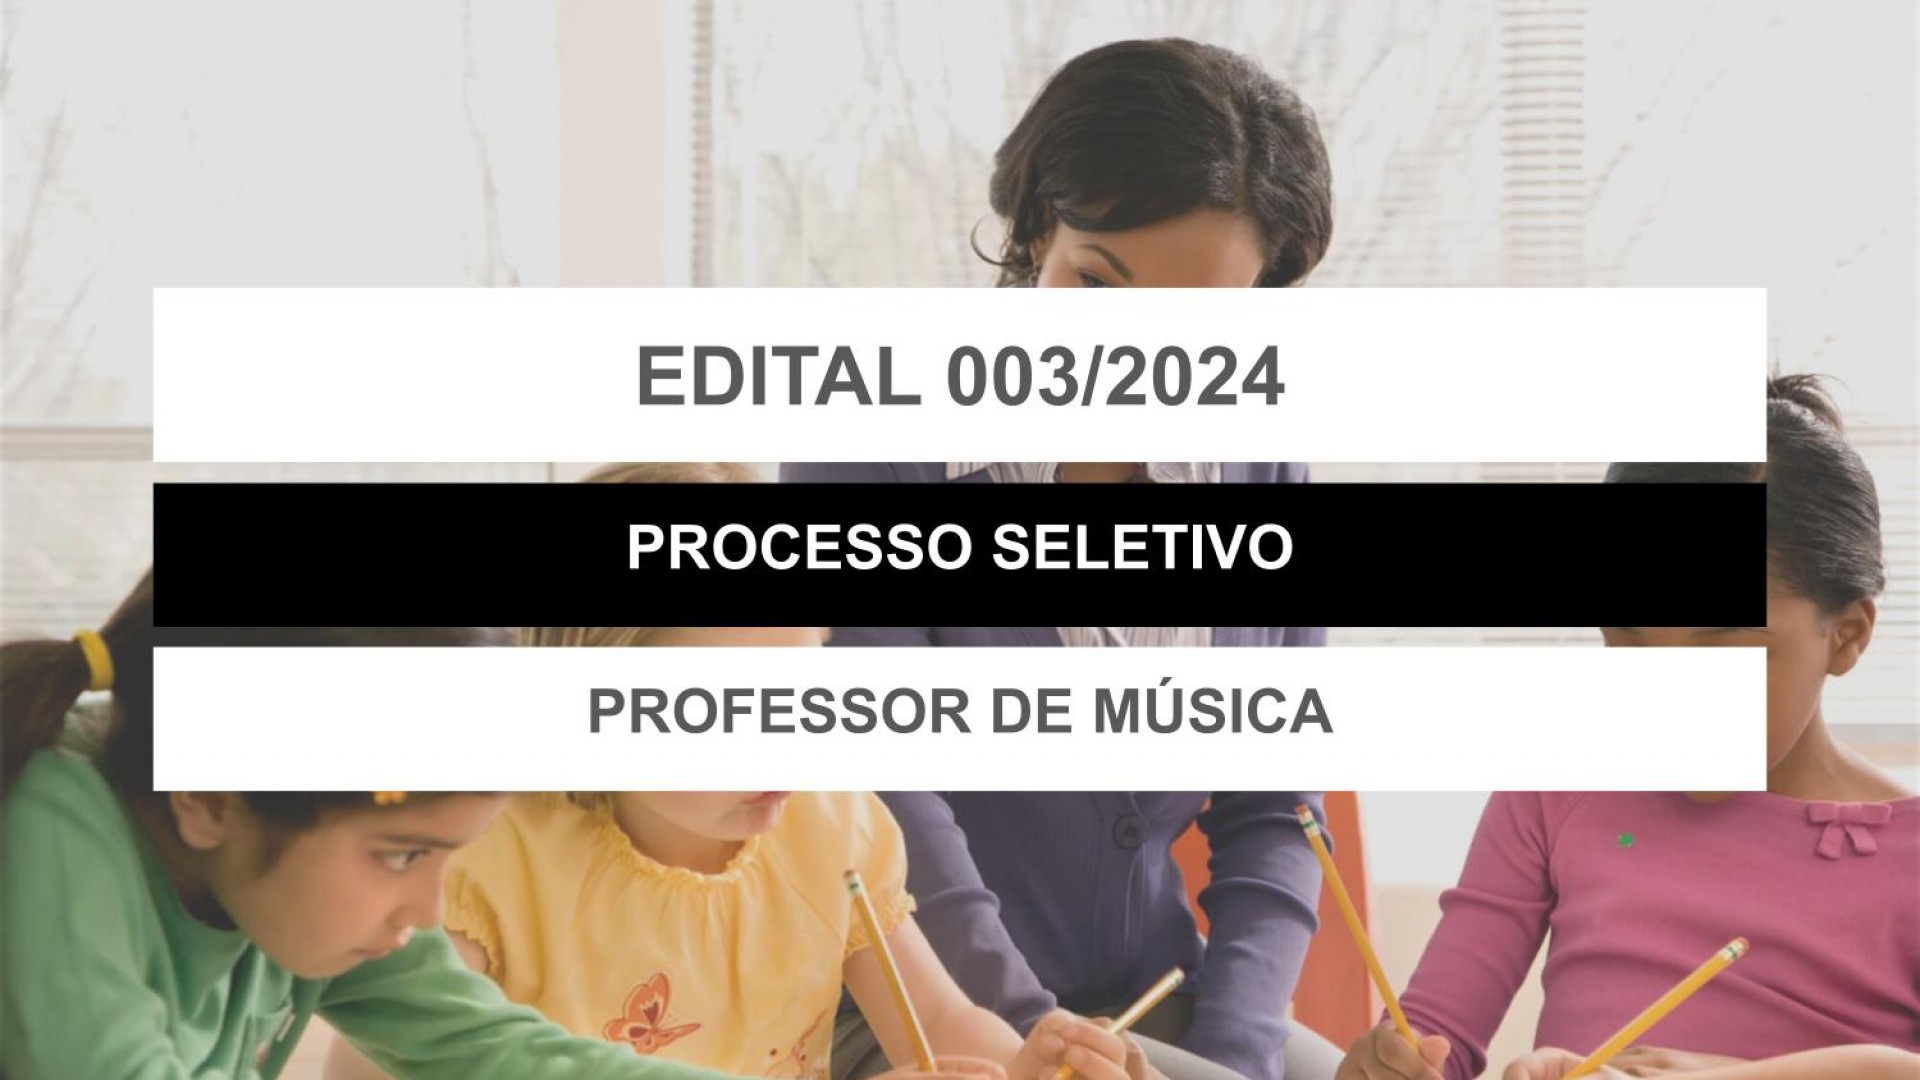 EDITAL EDUCAÇÃO Nº 003/2024 - PROFESSOR DE MÚSICA